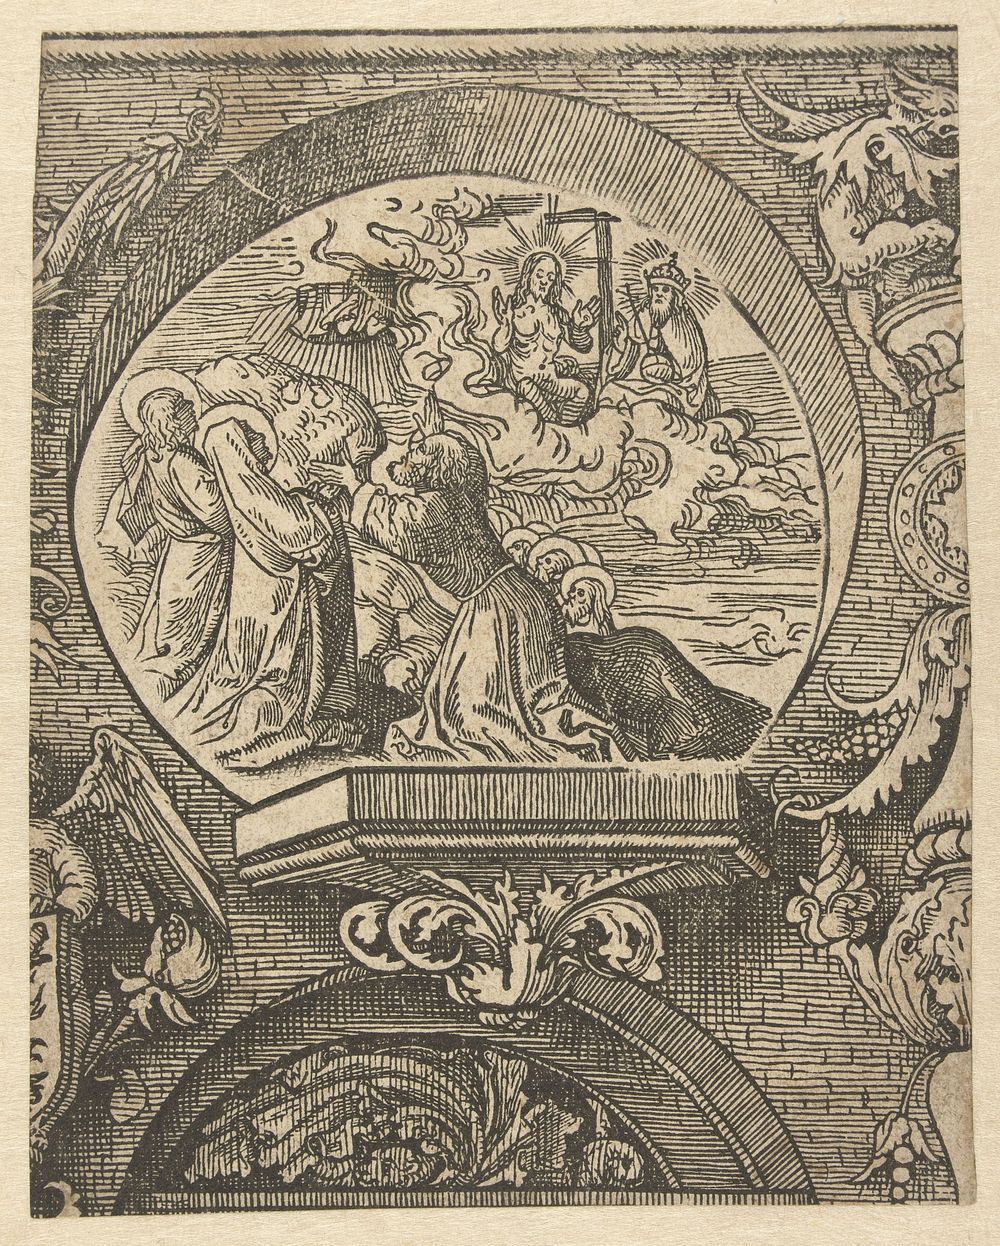 De hemelvaart en Christus voor God de Vader (1520) by Jacob Cornelisz van Oostsanen and Doen Pietersz